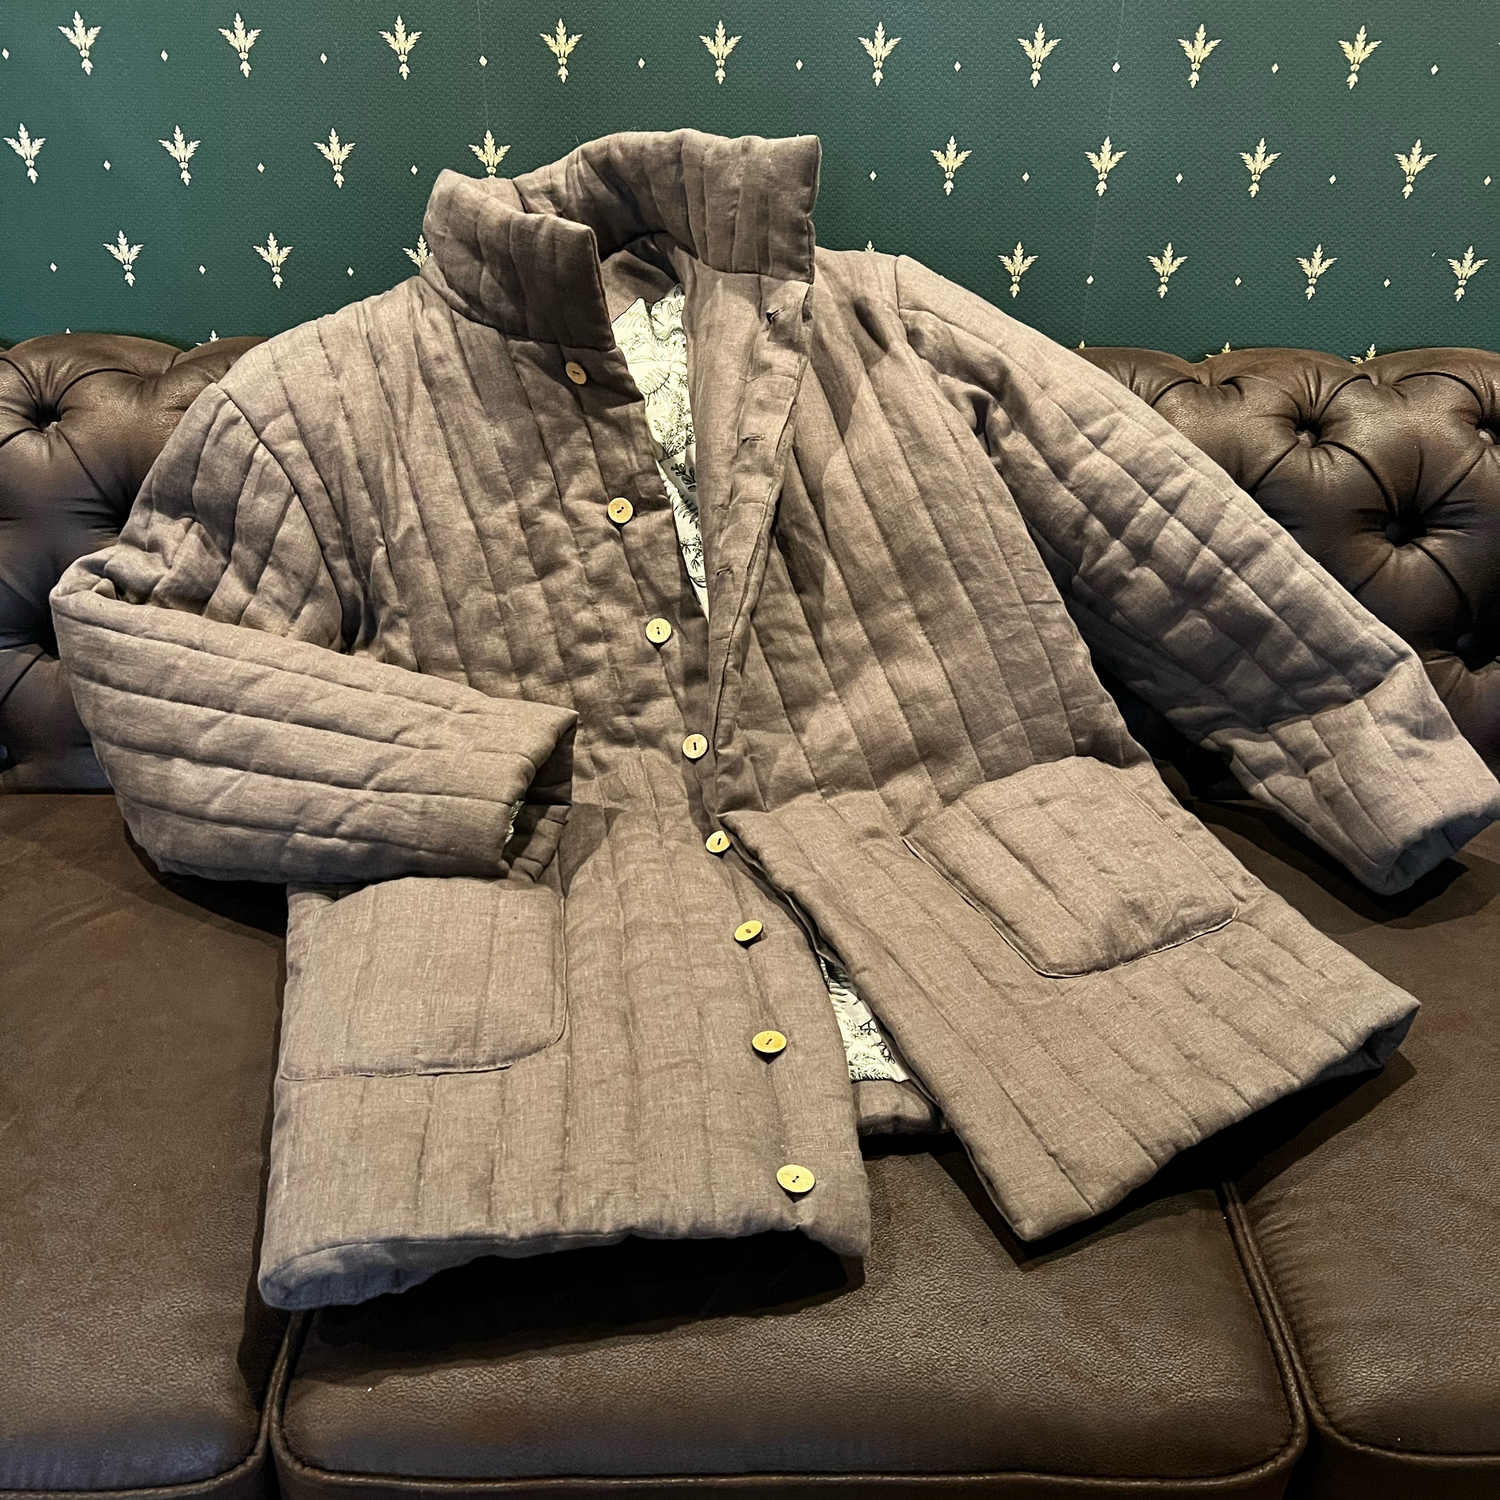 Фото №1 к отзыву покупателя nataliya_sin о товаре Куртки: льняная мужская стеганая куртка, фуфайка, стёганка, телогрейка